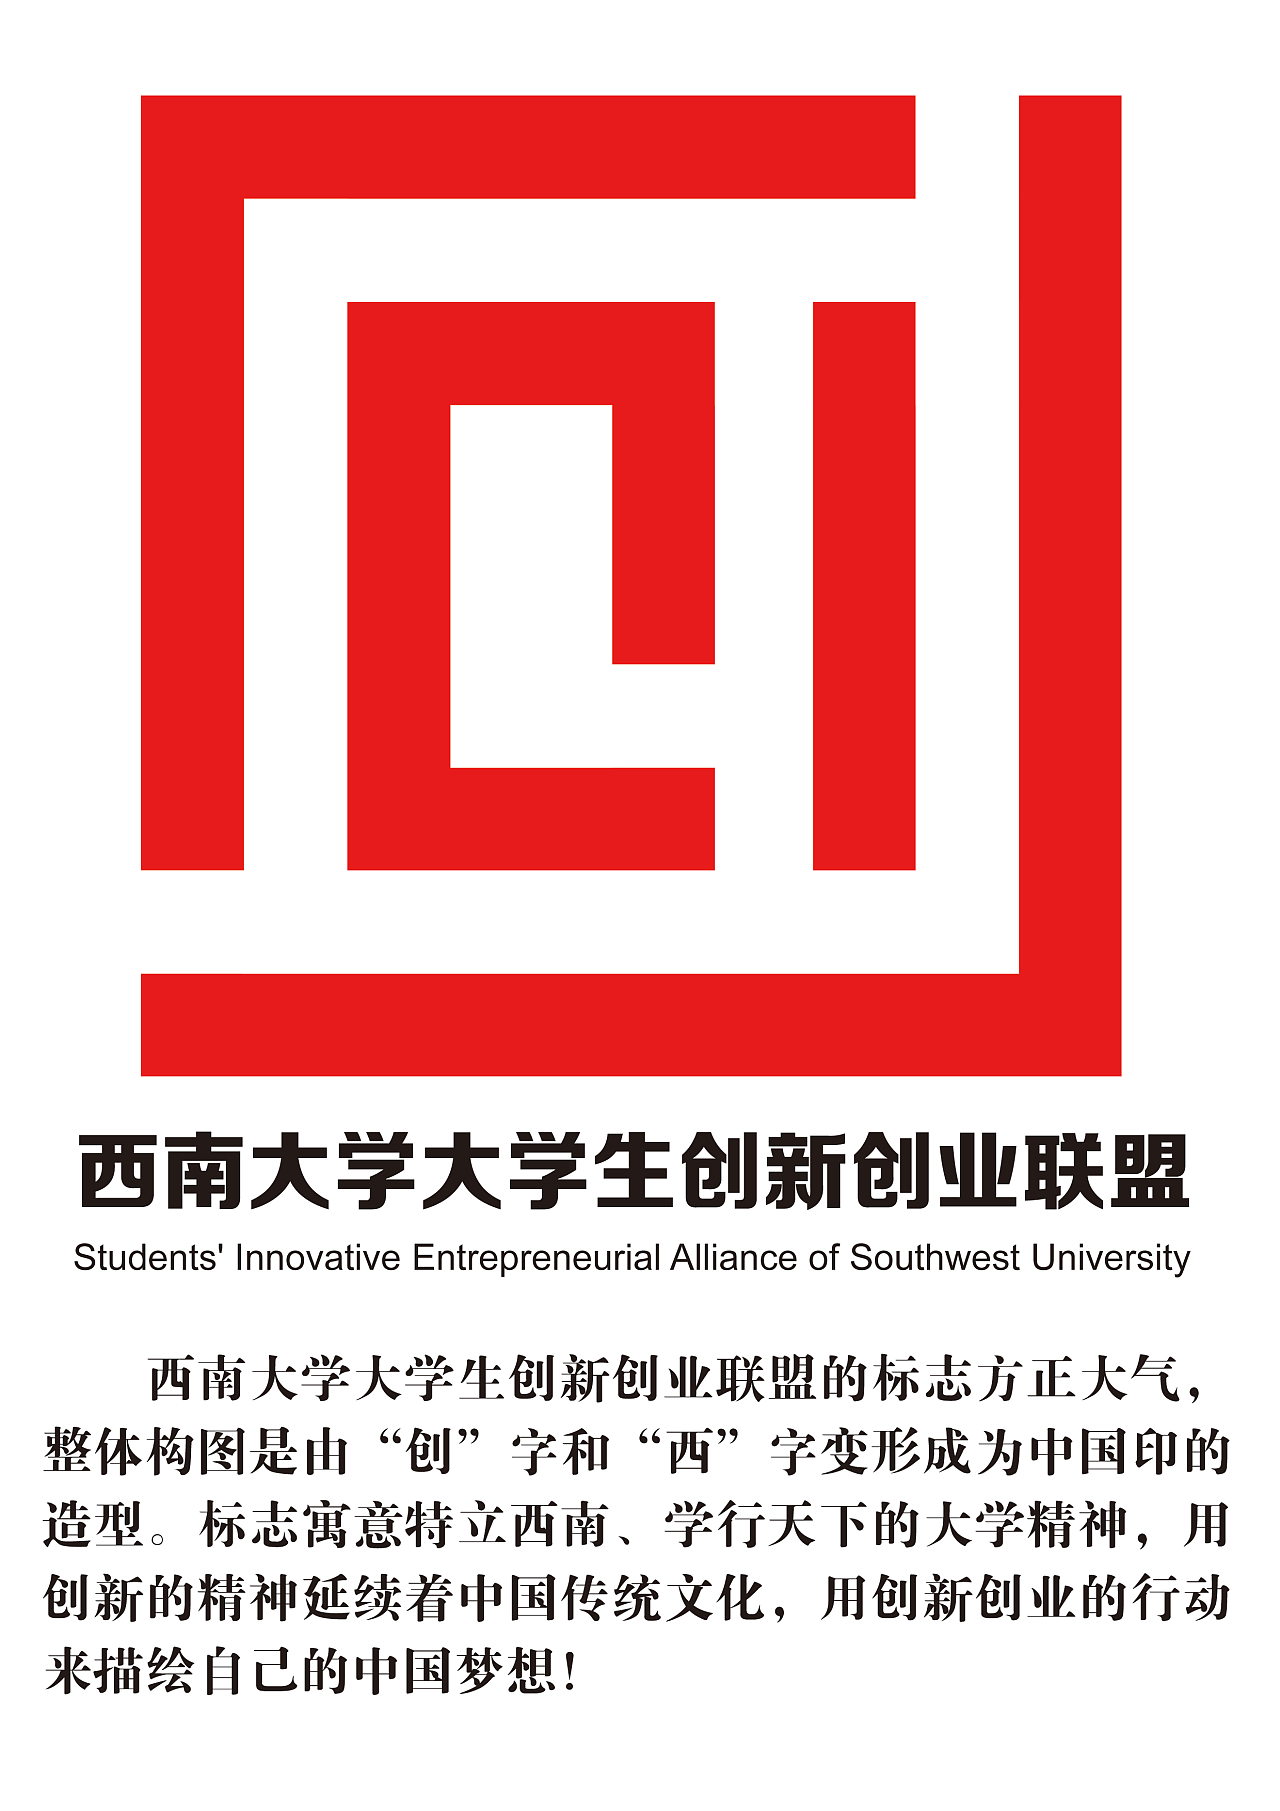 创业联盟的标志方正大气,整体构图是由"创"字和"西"字变形成为中国印